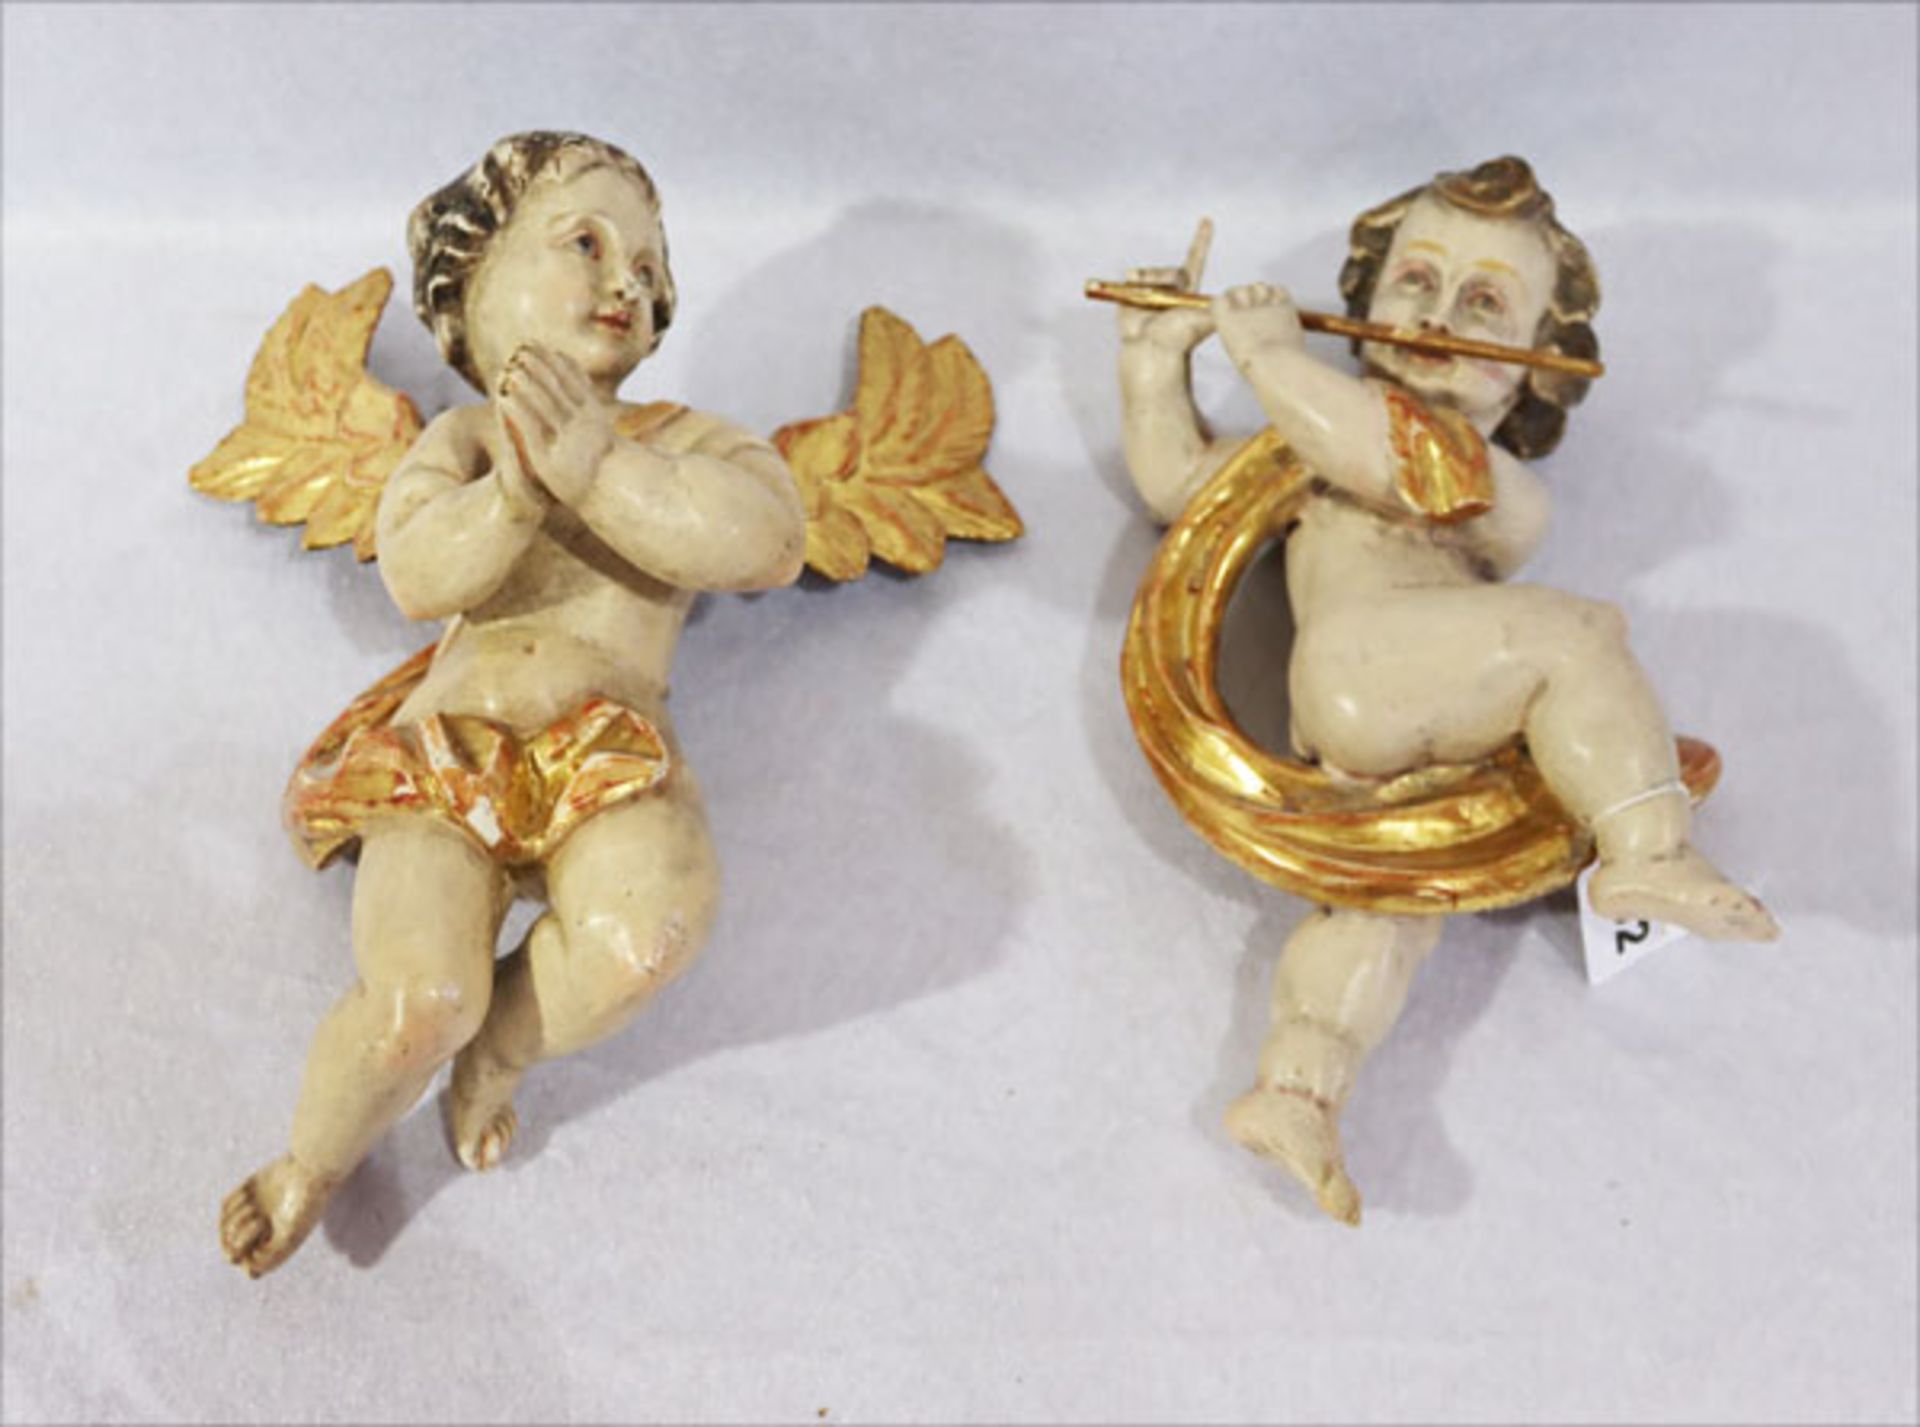 2 Holzskulpturen 'Engel mit Querflöte' und 'Betender Engel', farbig gefaßt, Fassung teils